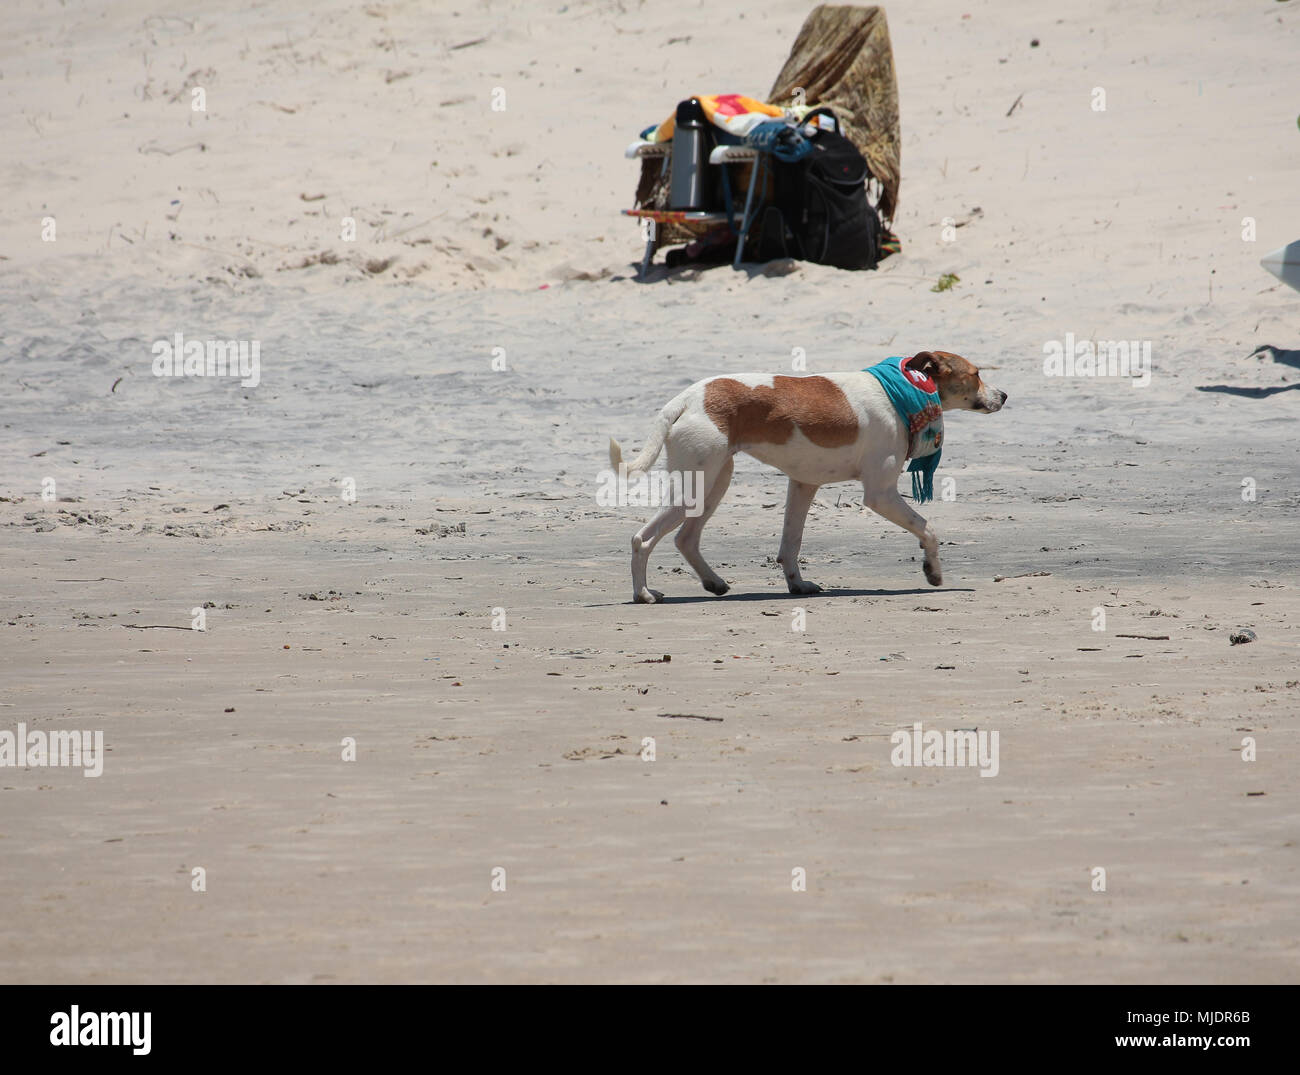 Pasear perros en la playa luciendo una bufanda. Praia do Rosa, Brasil Foto de stock